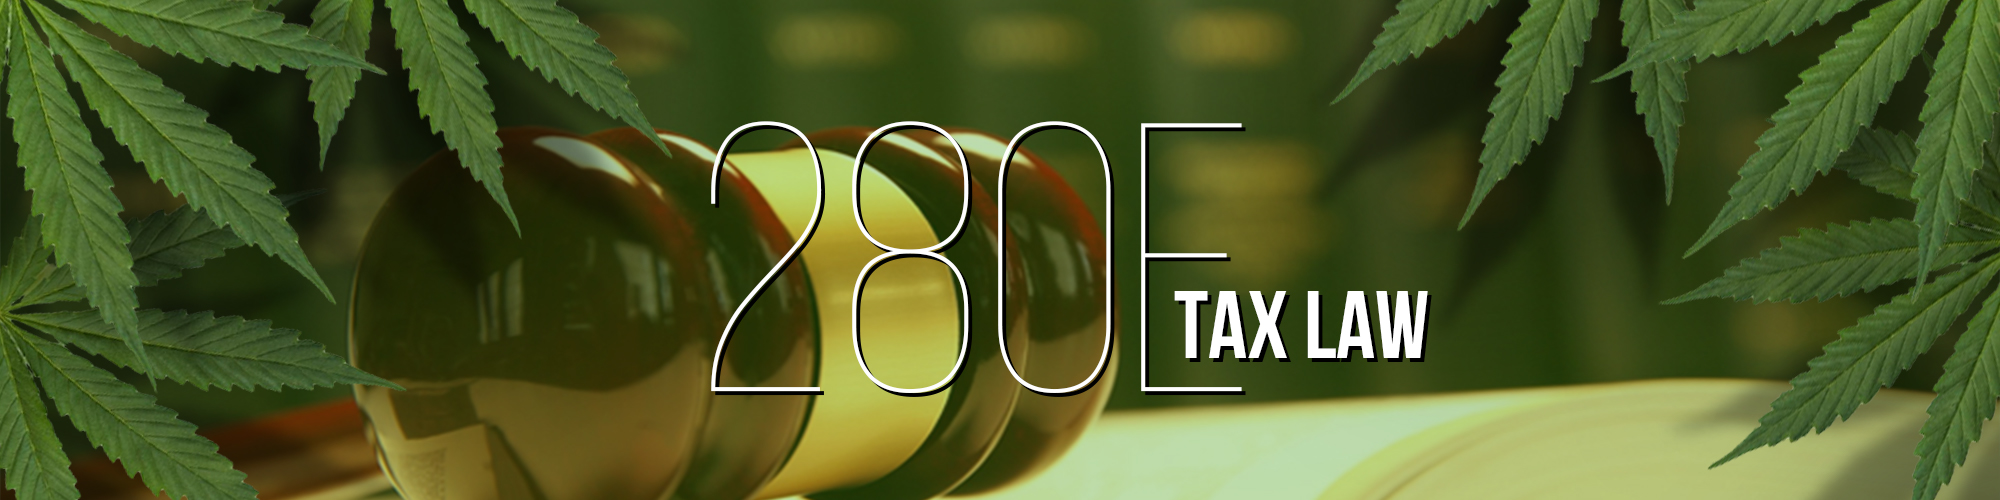 Cannabis & Tax Code 280e